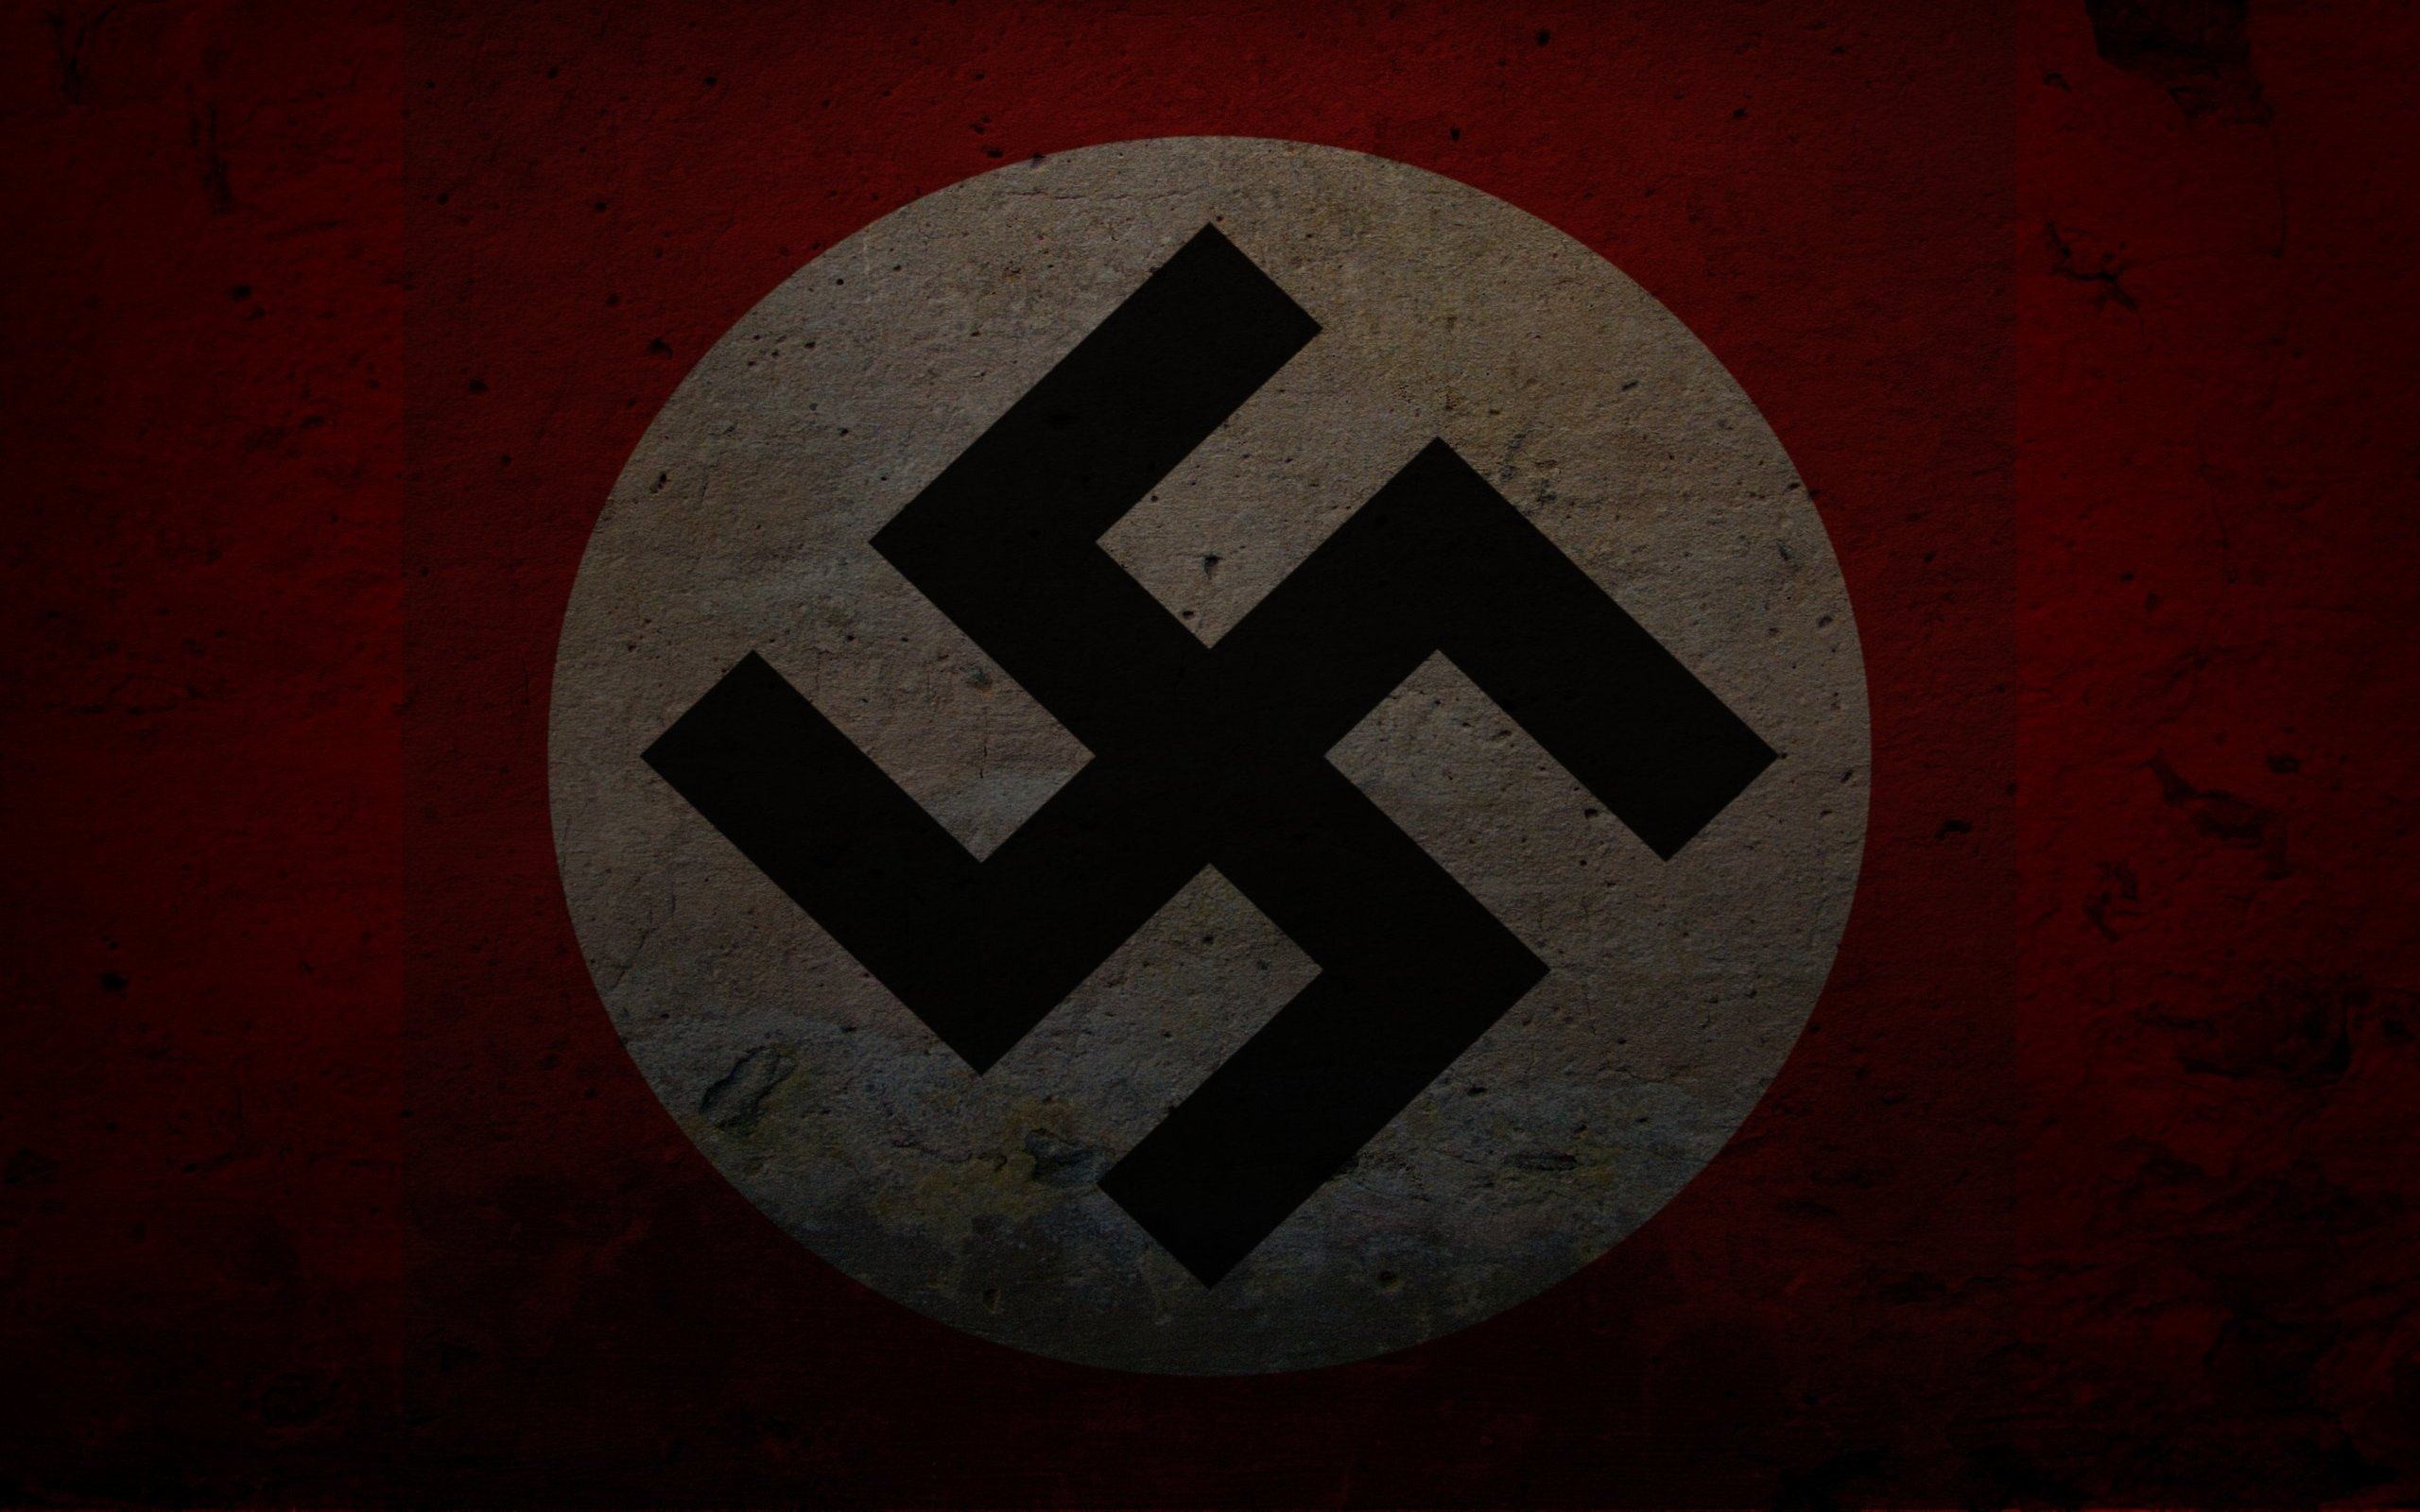 Фон сс. Флаг 3 рейха нацистской Германии.